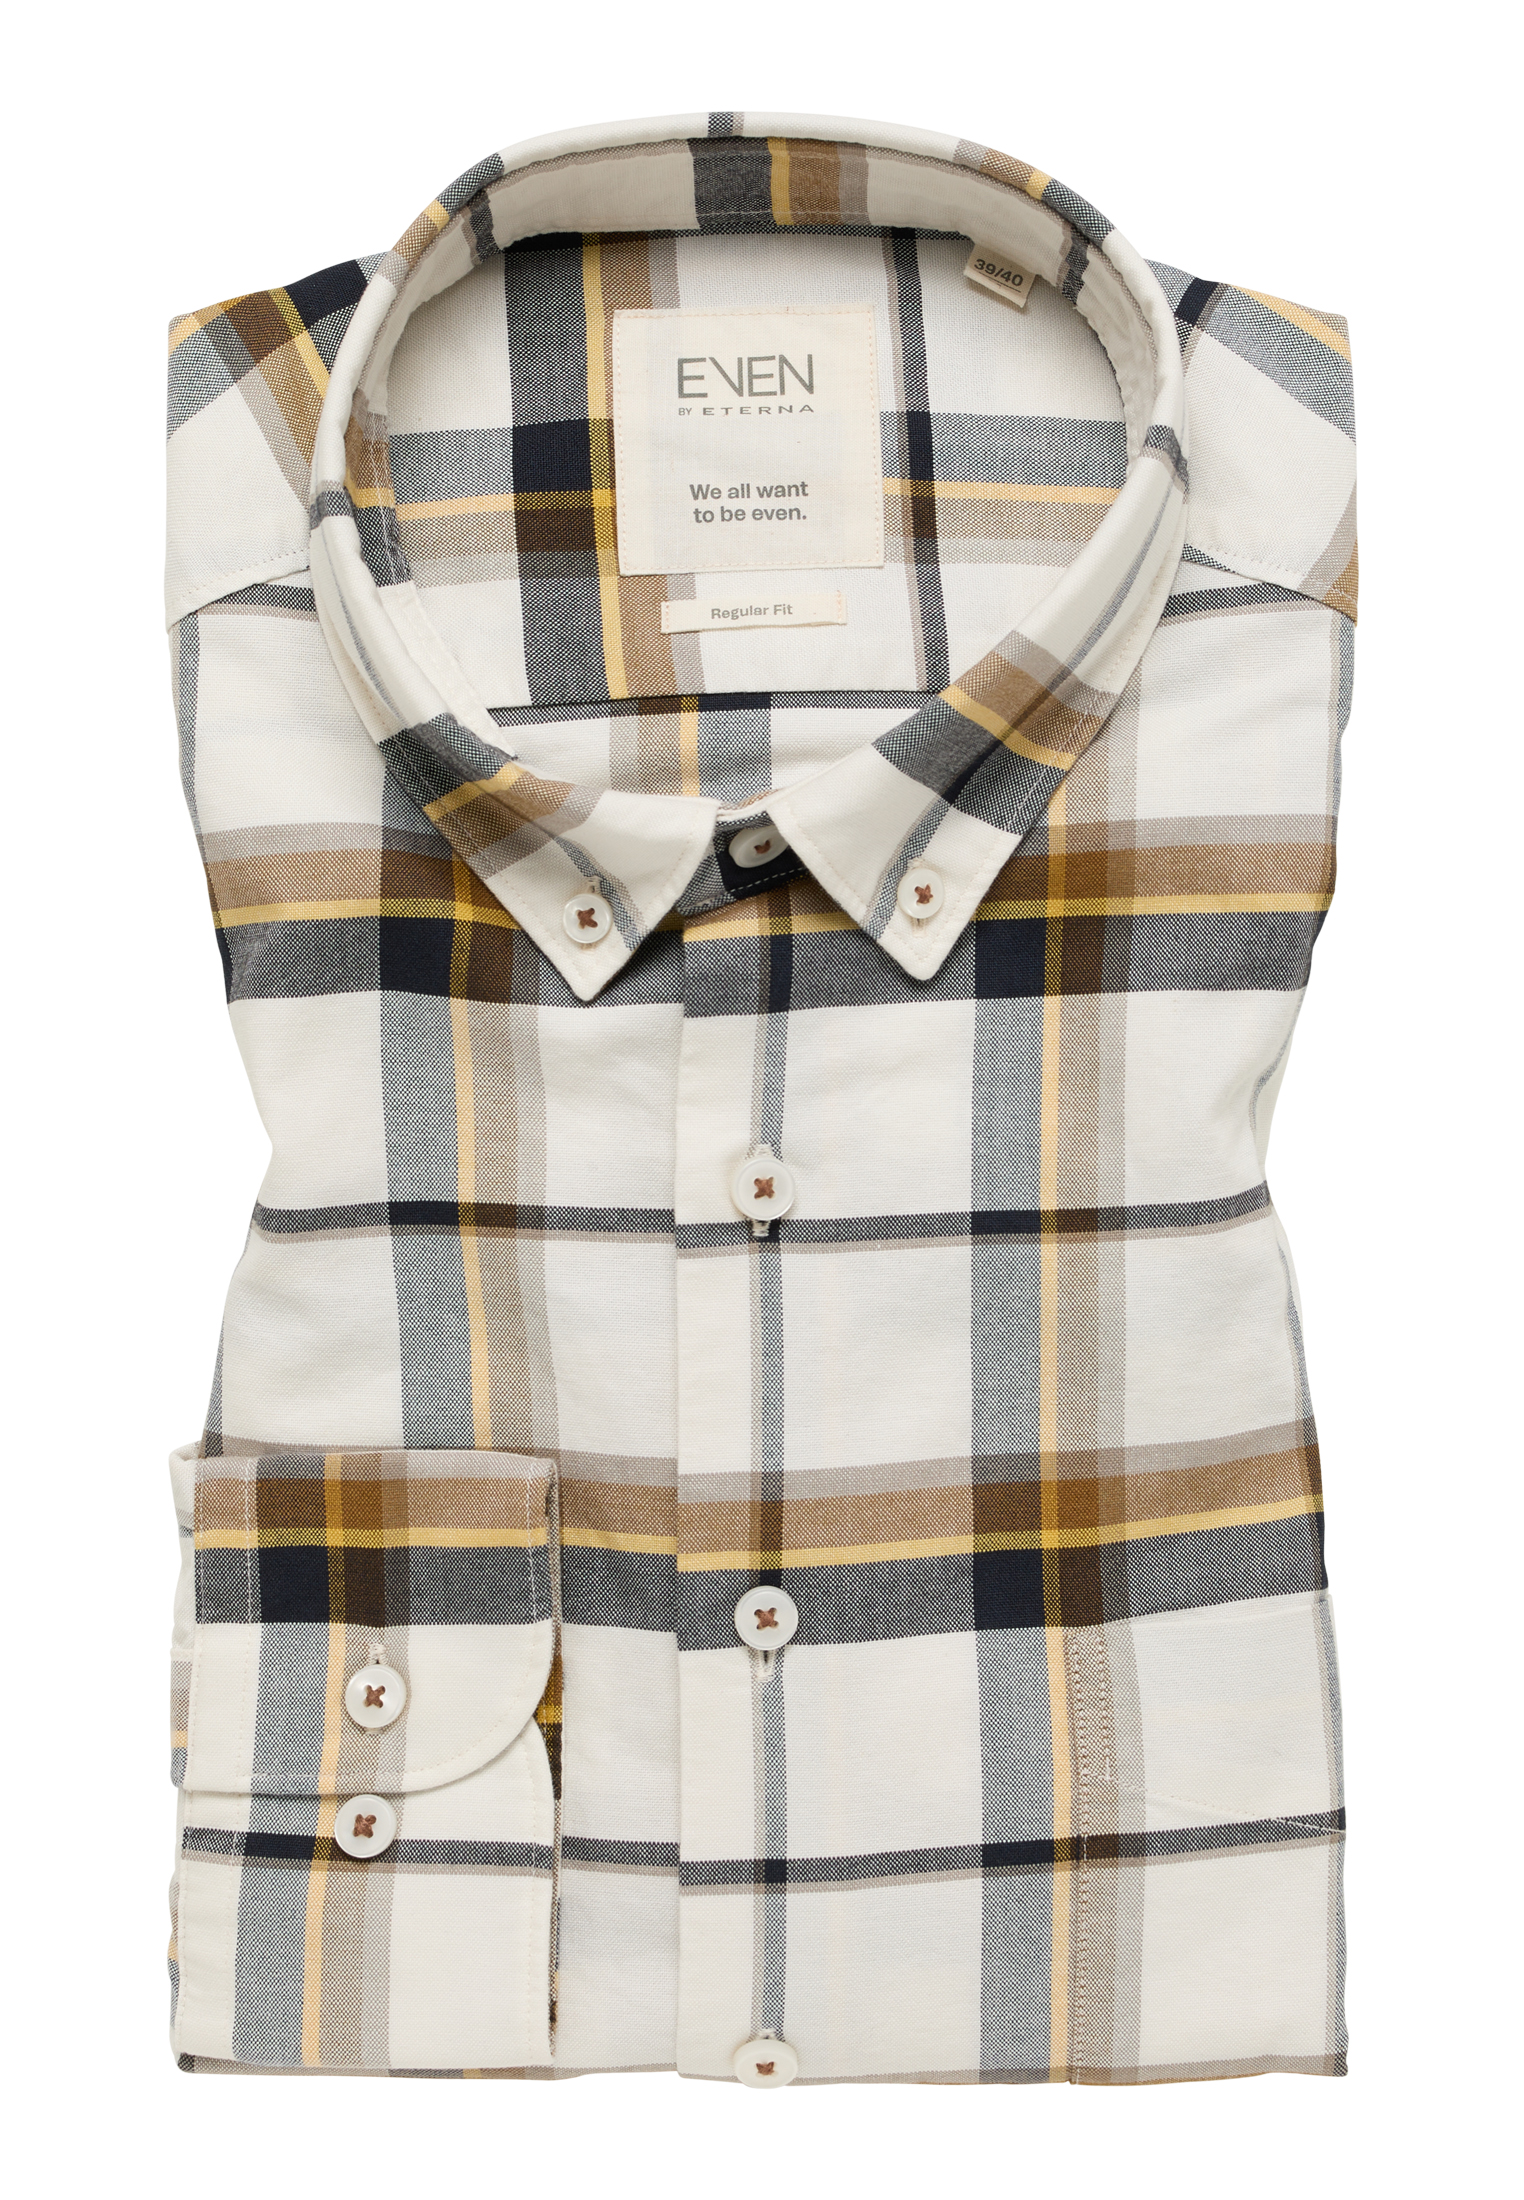 sleeve XL | MODERN | in Shirt | checkered beige | long FIT beige 1SH11420-02-01-XL-1/1